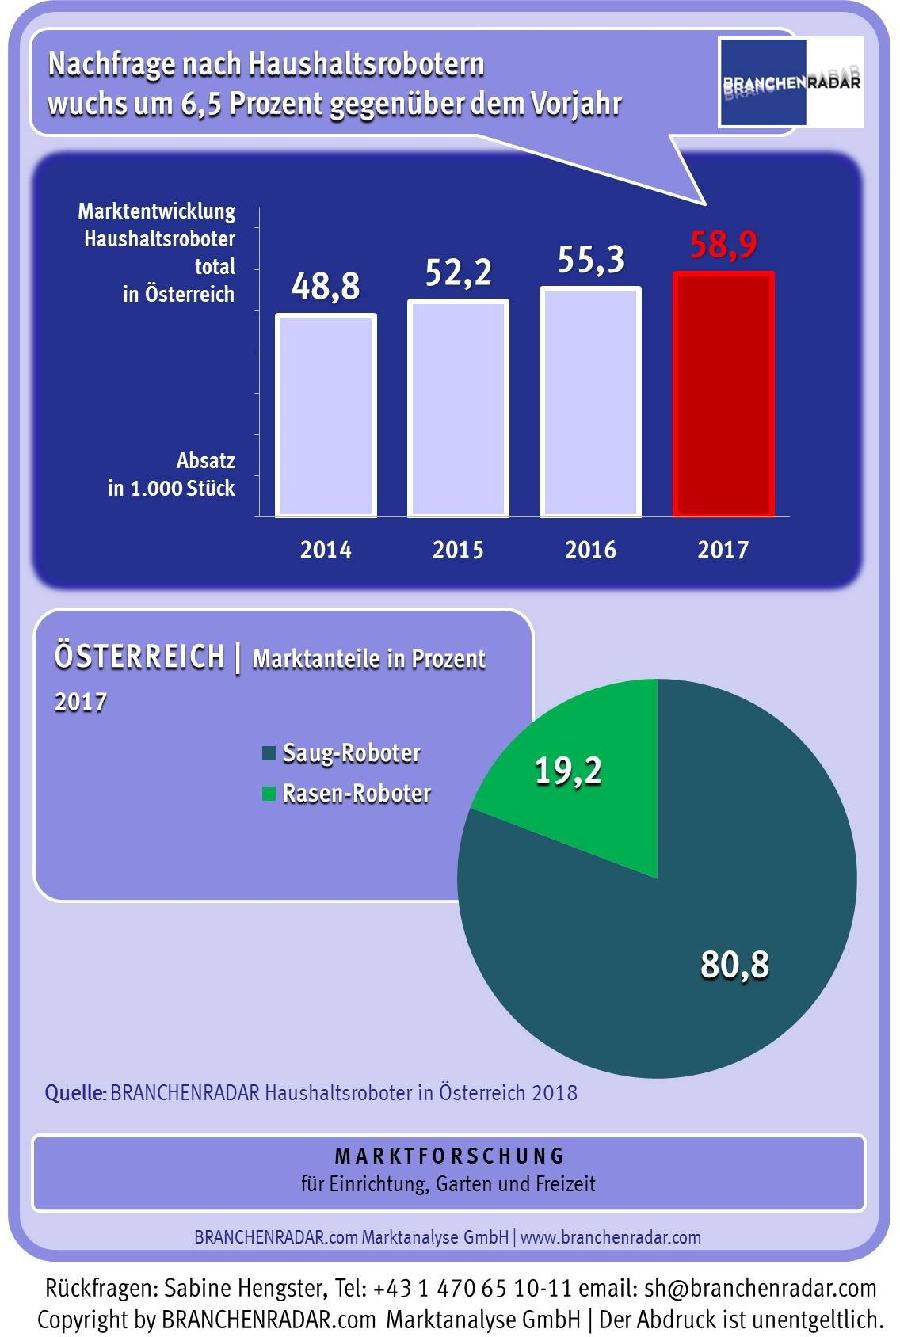 Die Nachfrage nach Haushaltsrobotern stieg in Österreich auch im Jahr 2017 robust. Insgesamt wurden im letzten Jahr bereits annähernd 60.000 Stück verkauft, zeigen aktuelle Daten einer Marktstudie zu Haushaltsrobotern in Österreich von BRANCHENRADAR.com Marktanalyse.